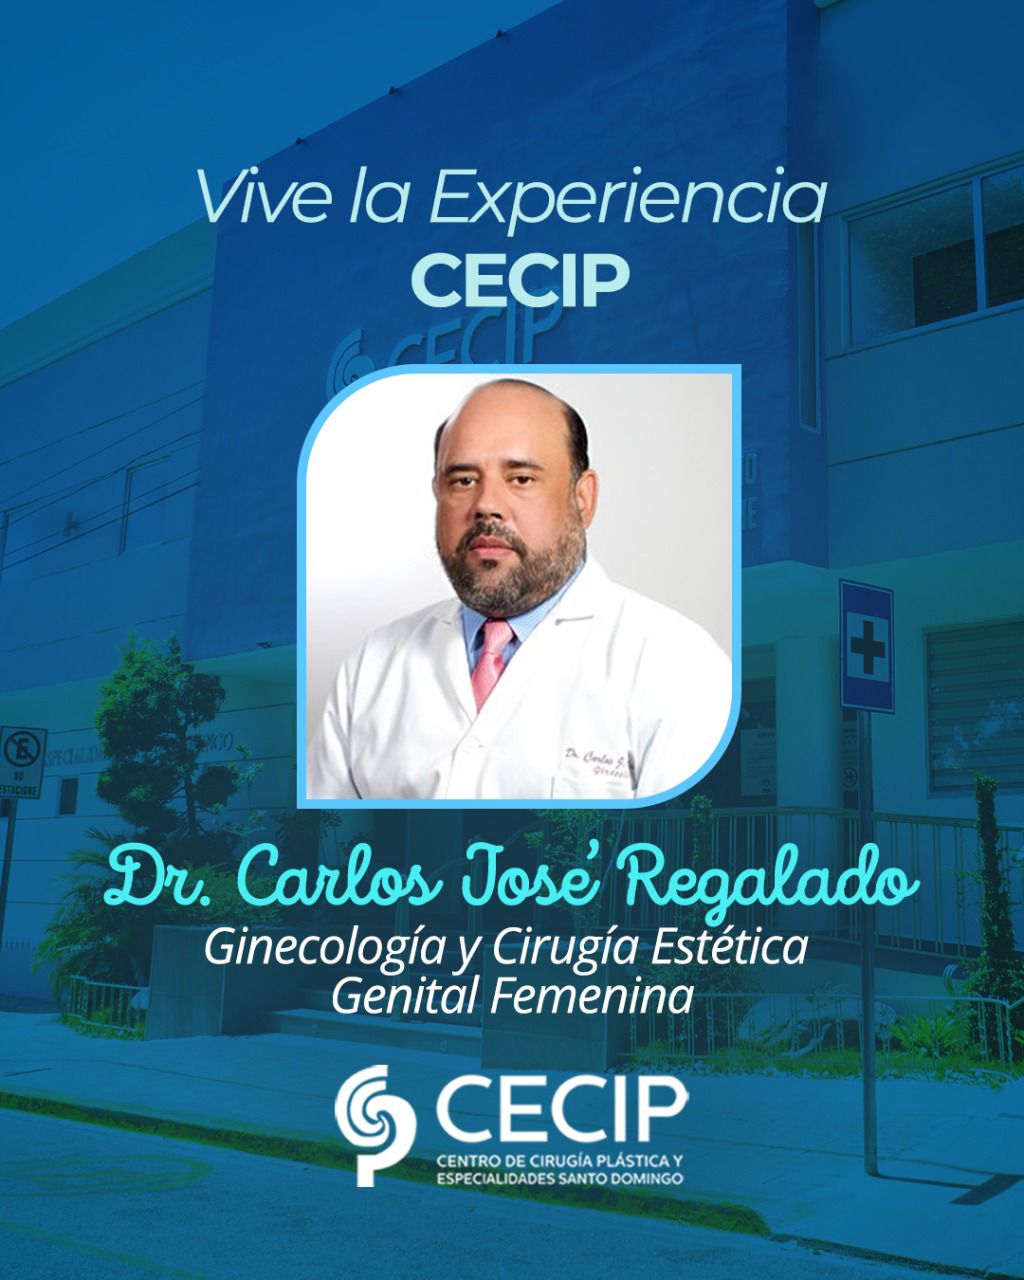 DR. CARLOS JOSE REGALADO